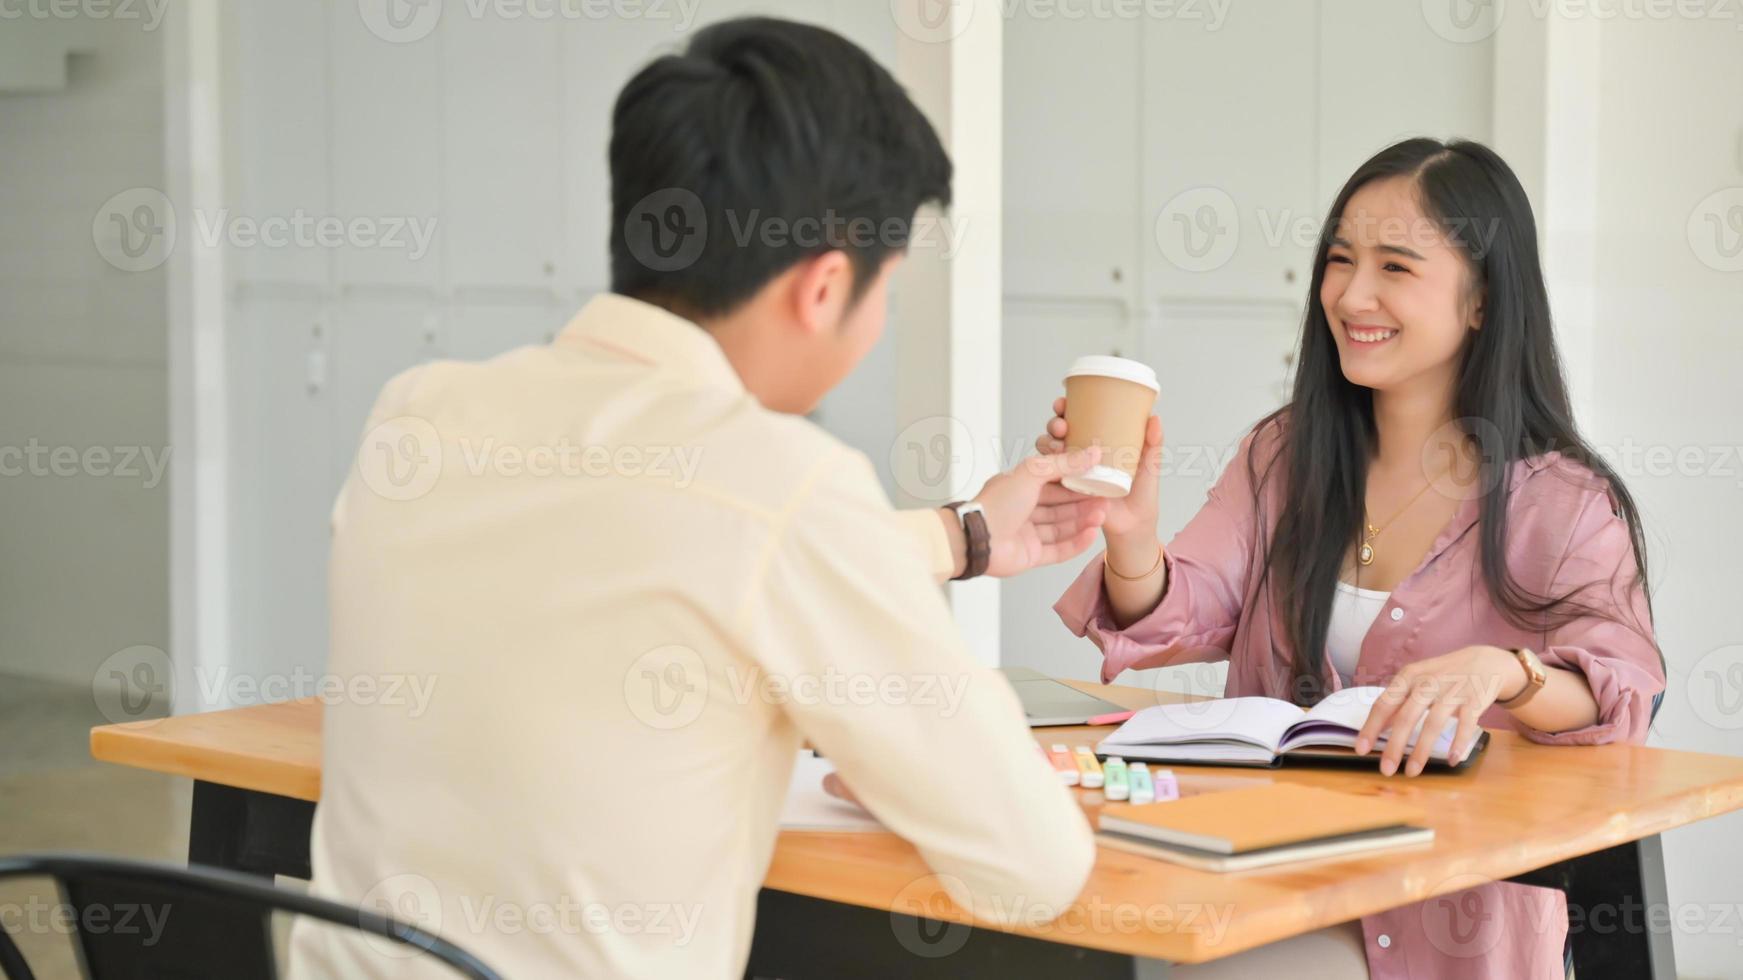 shot van mannen die koffie geven aan vrouwen terwijl ze gestrest zijn door boeken te lezen voor examenvoorbereiding. foto